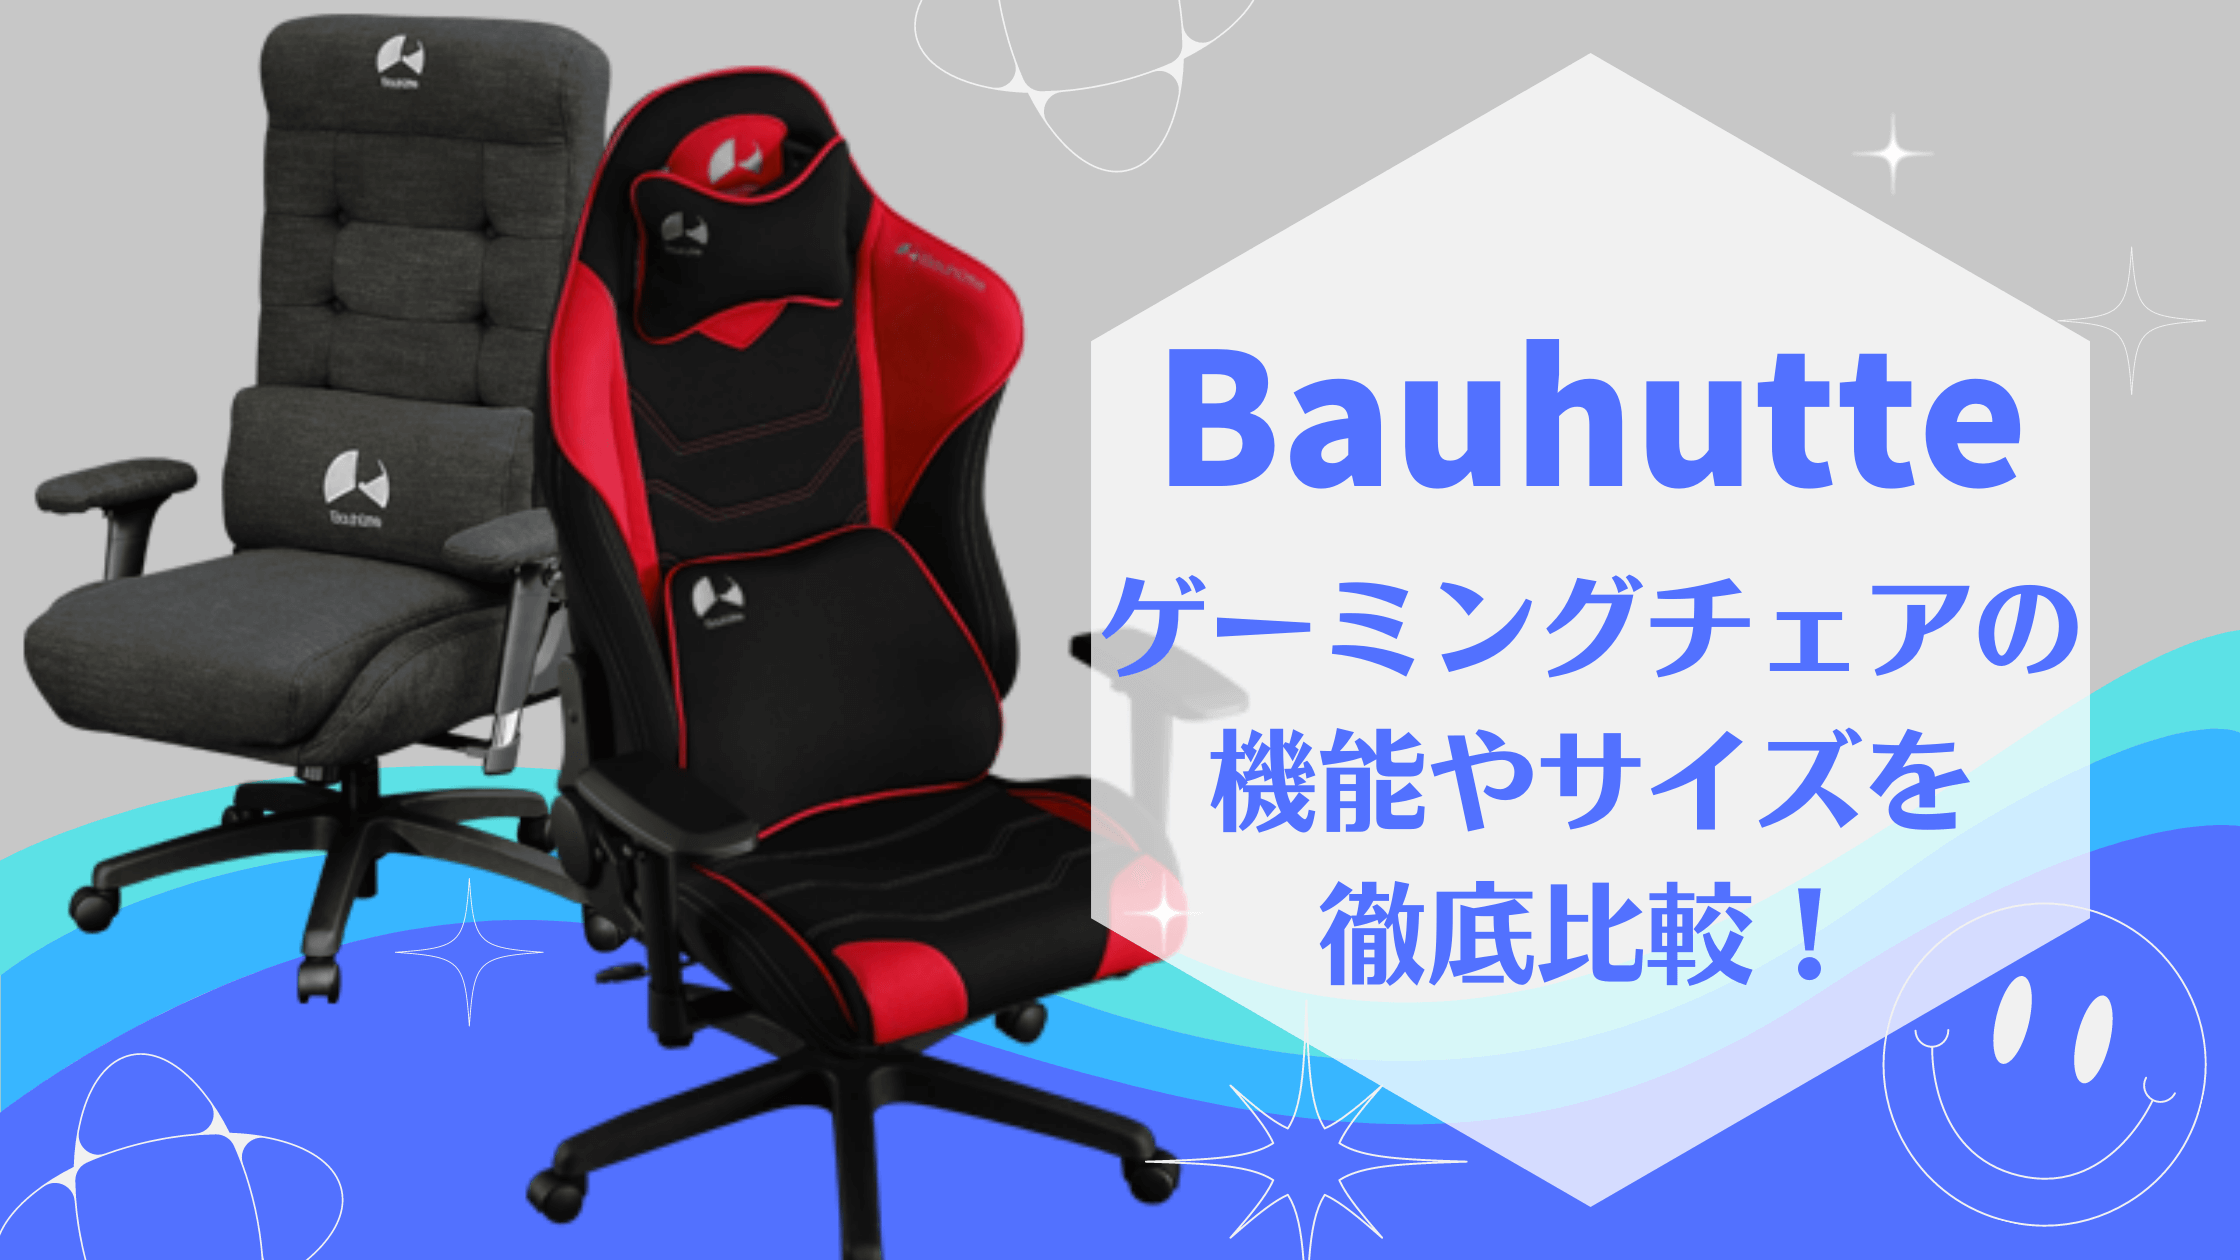 Bauhutte (バウヒュッテ) ゲーミング座椅子 GX-550-BK ブラック  純正チェアマット BCM-120BK ブラック 12